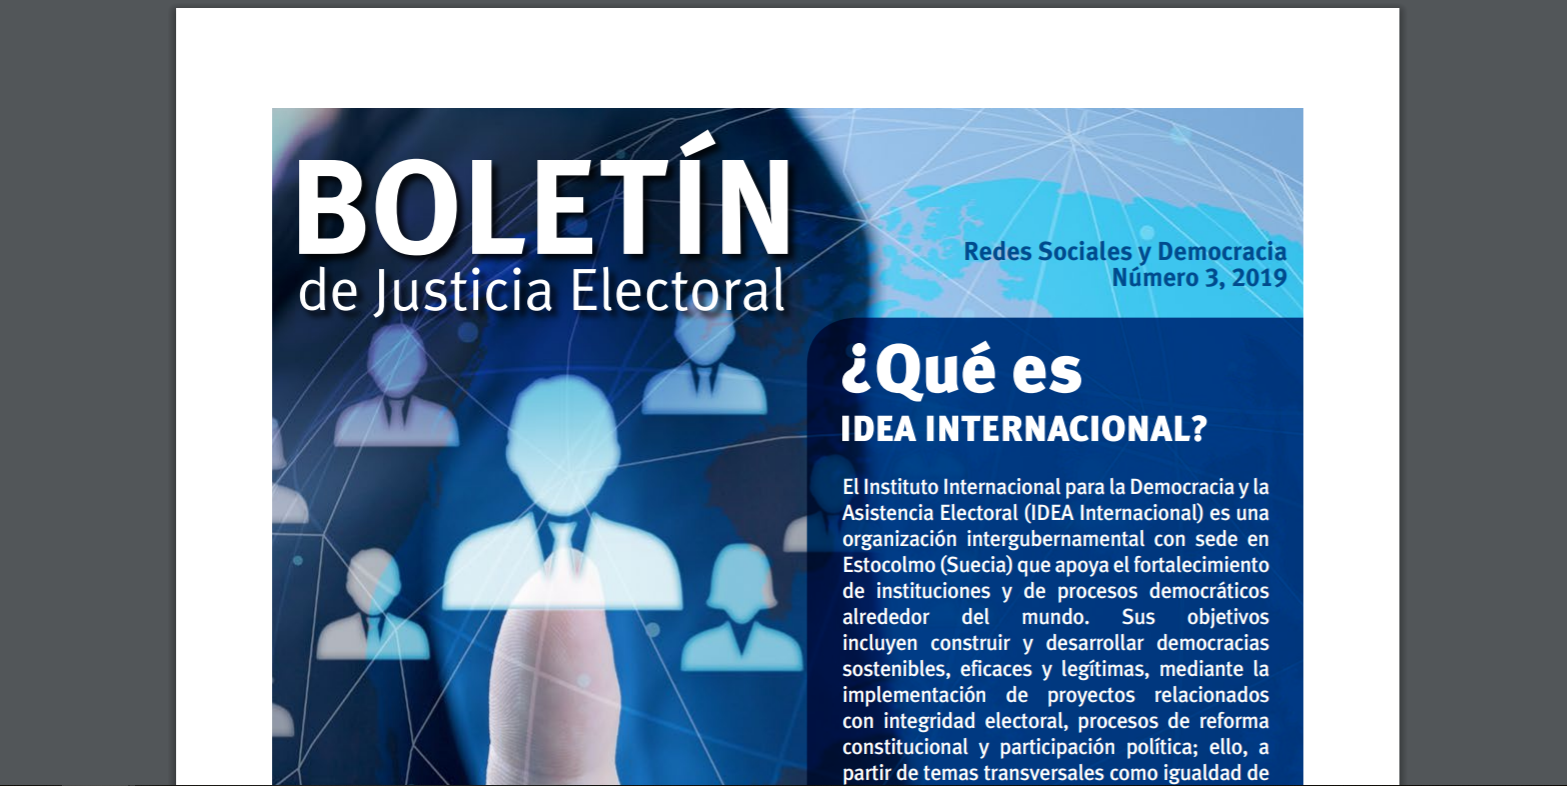 Fragmento de la portada del Boletín de Justicia Electoral No.3 